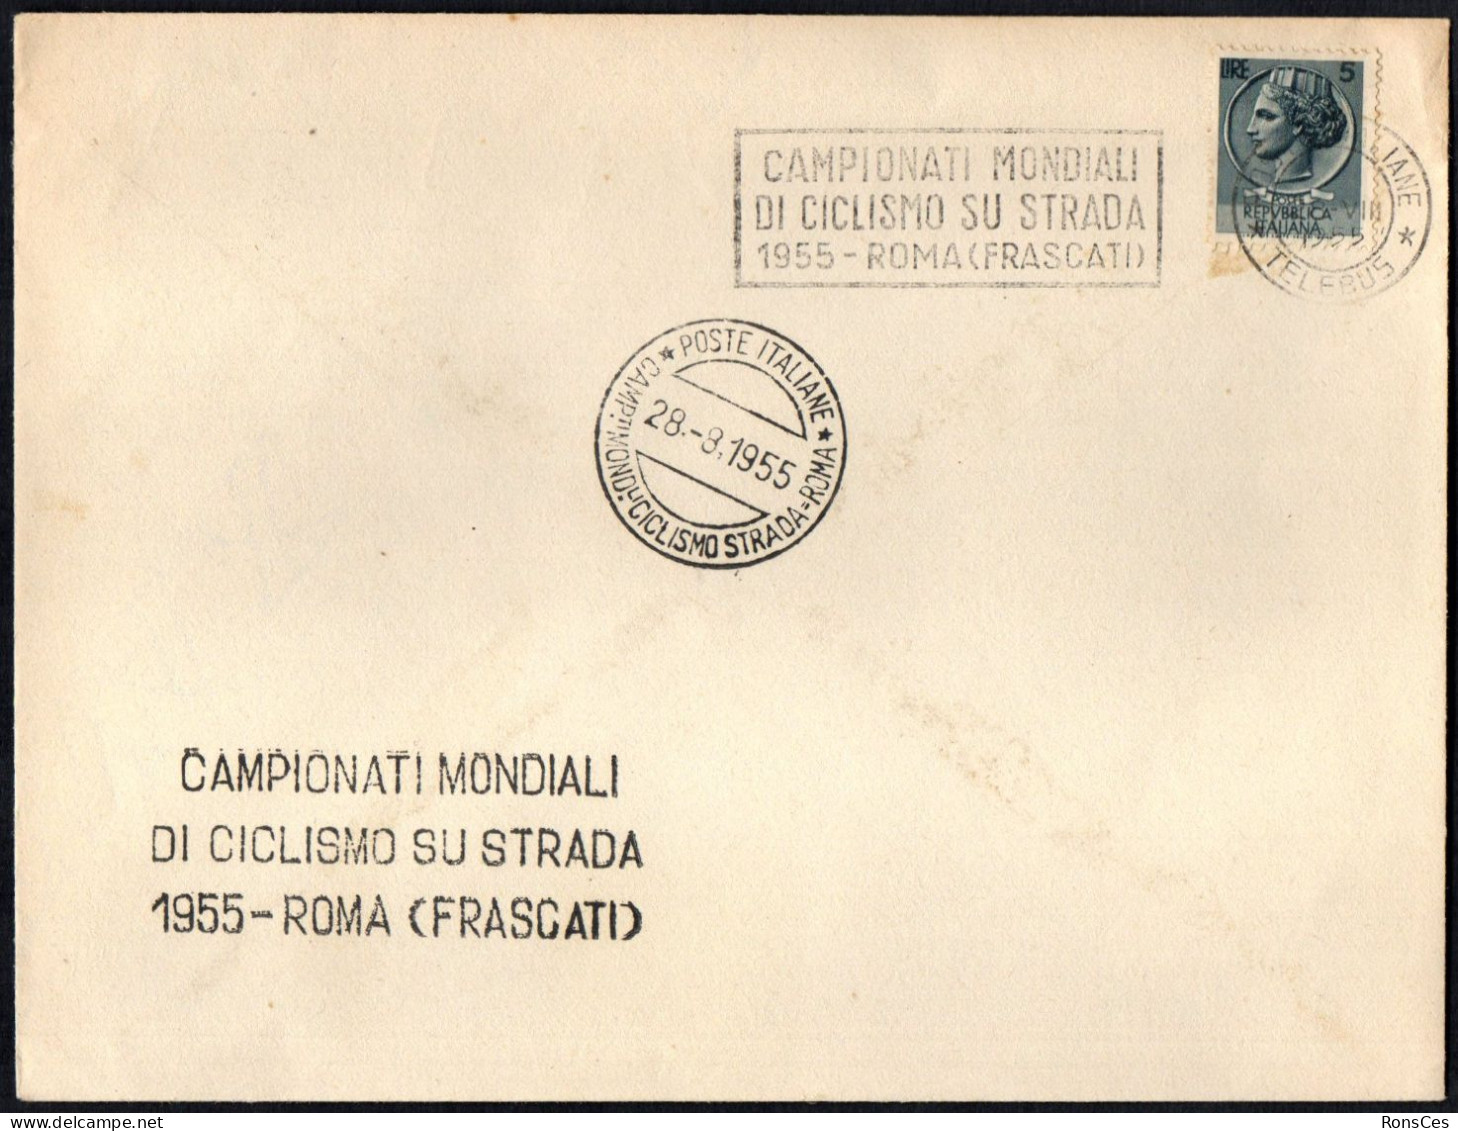 CYCLING - ITALIA ROMA 1955 - CAMPIONATI MONDIALI DI CICLISMO SU STRADA (FRASCATI) - A - Cyclisme